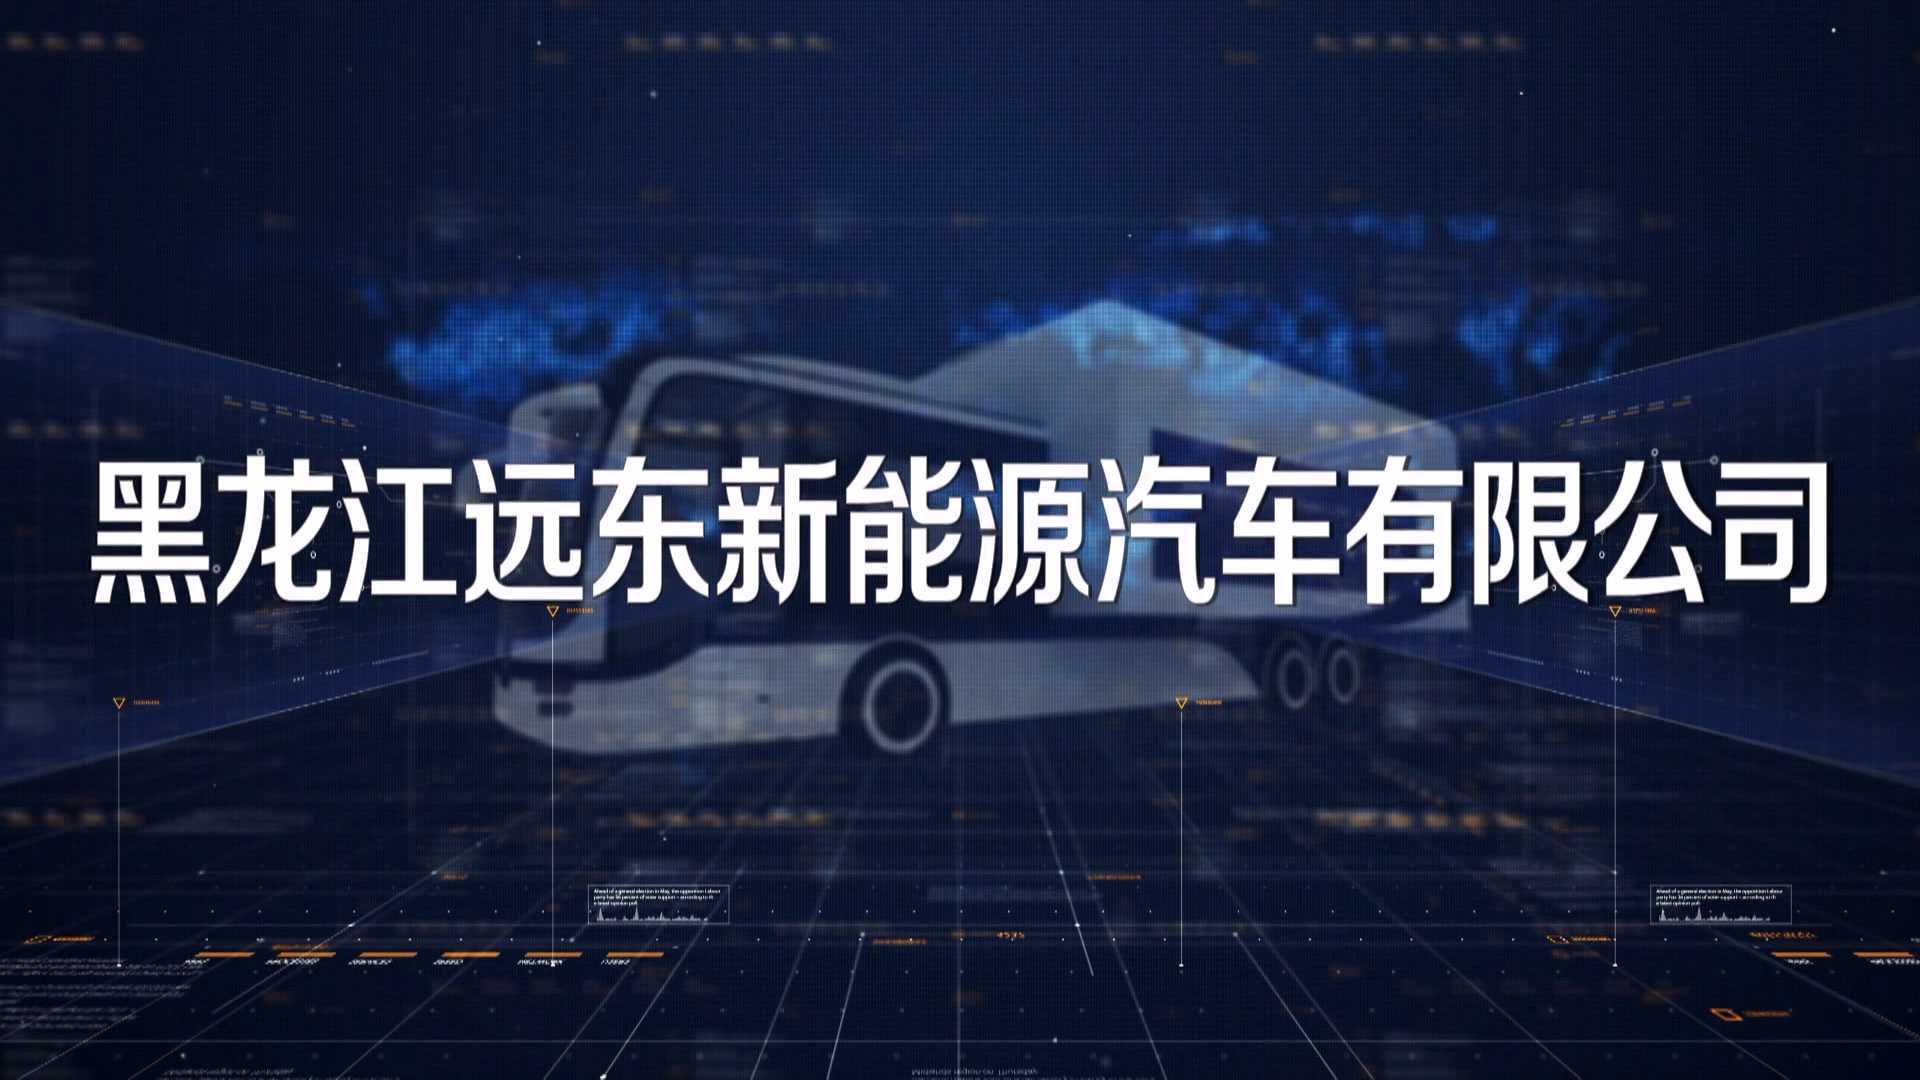 黑龙江远东新能源汽车有限公司